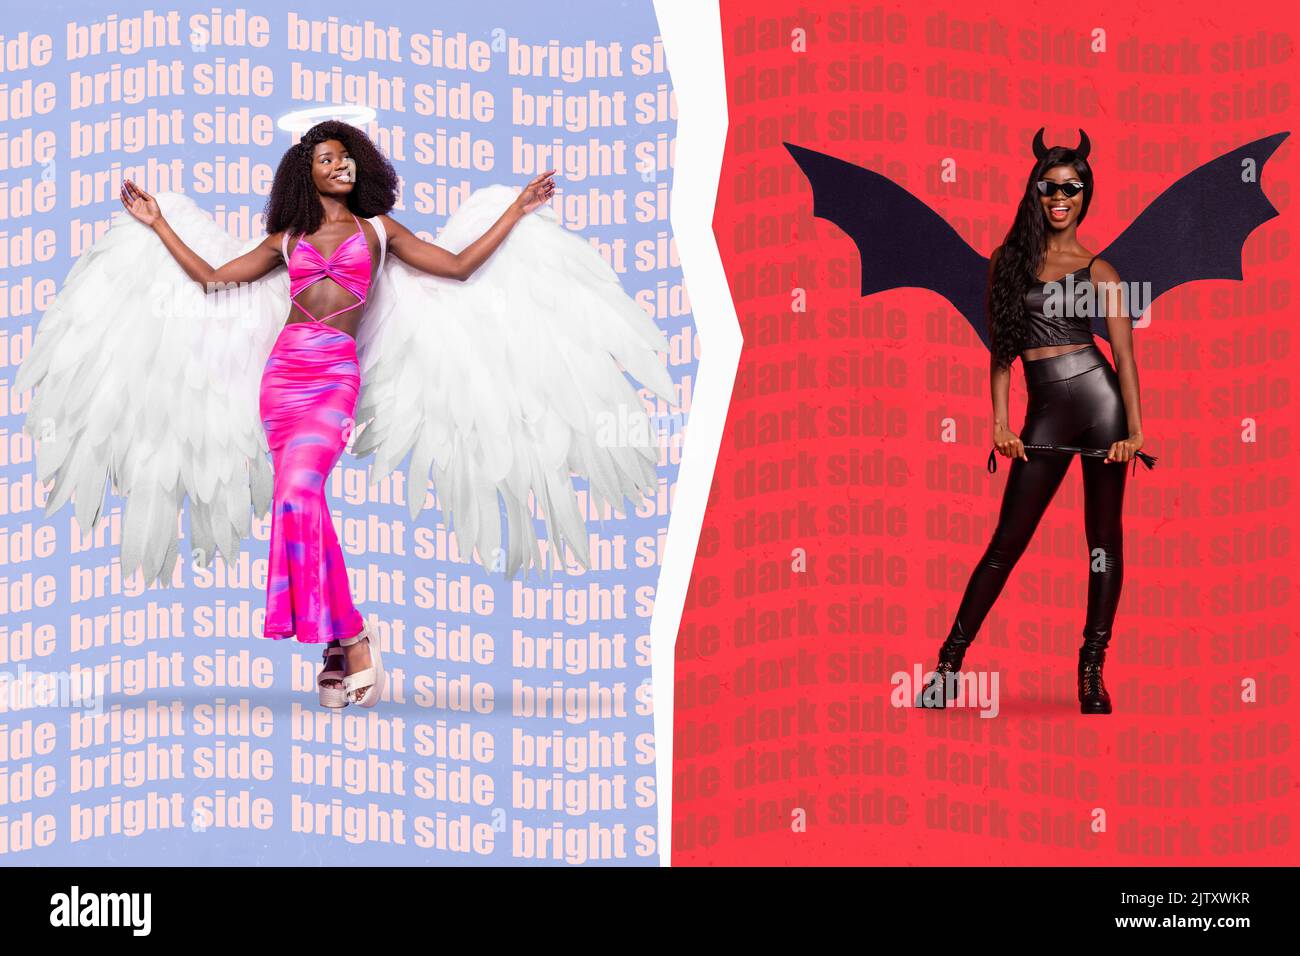 Immagine collage composita di due ragazze lato scuro male lato luminoso angelo isolato su sfondo creativo diviso Foto Stock